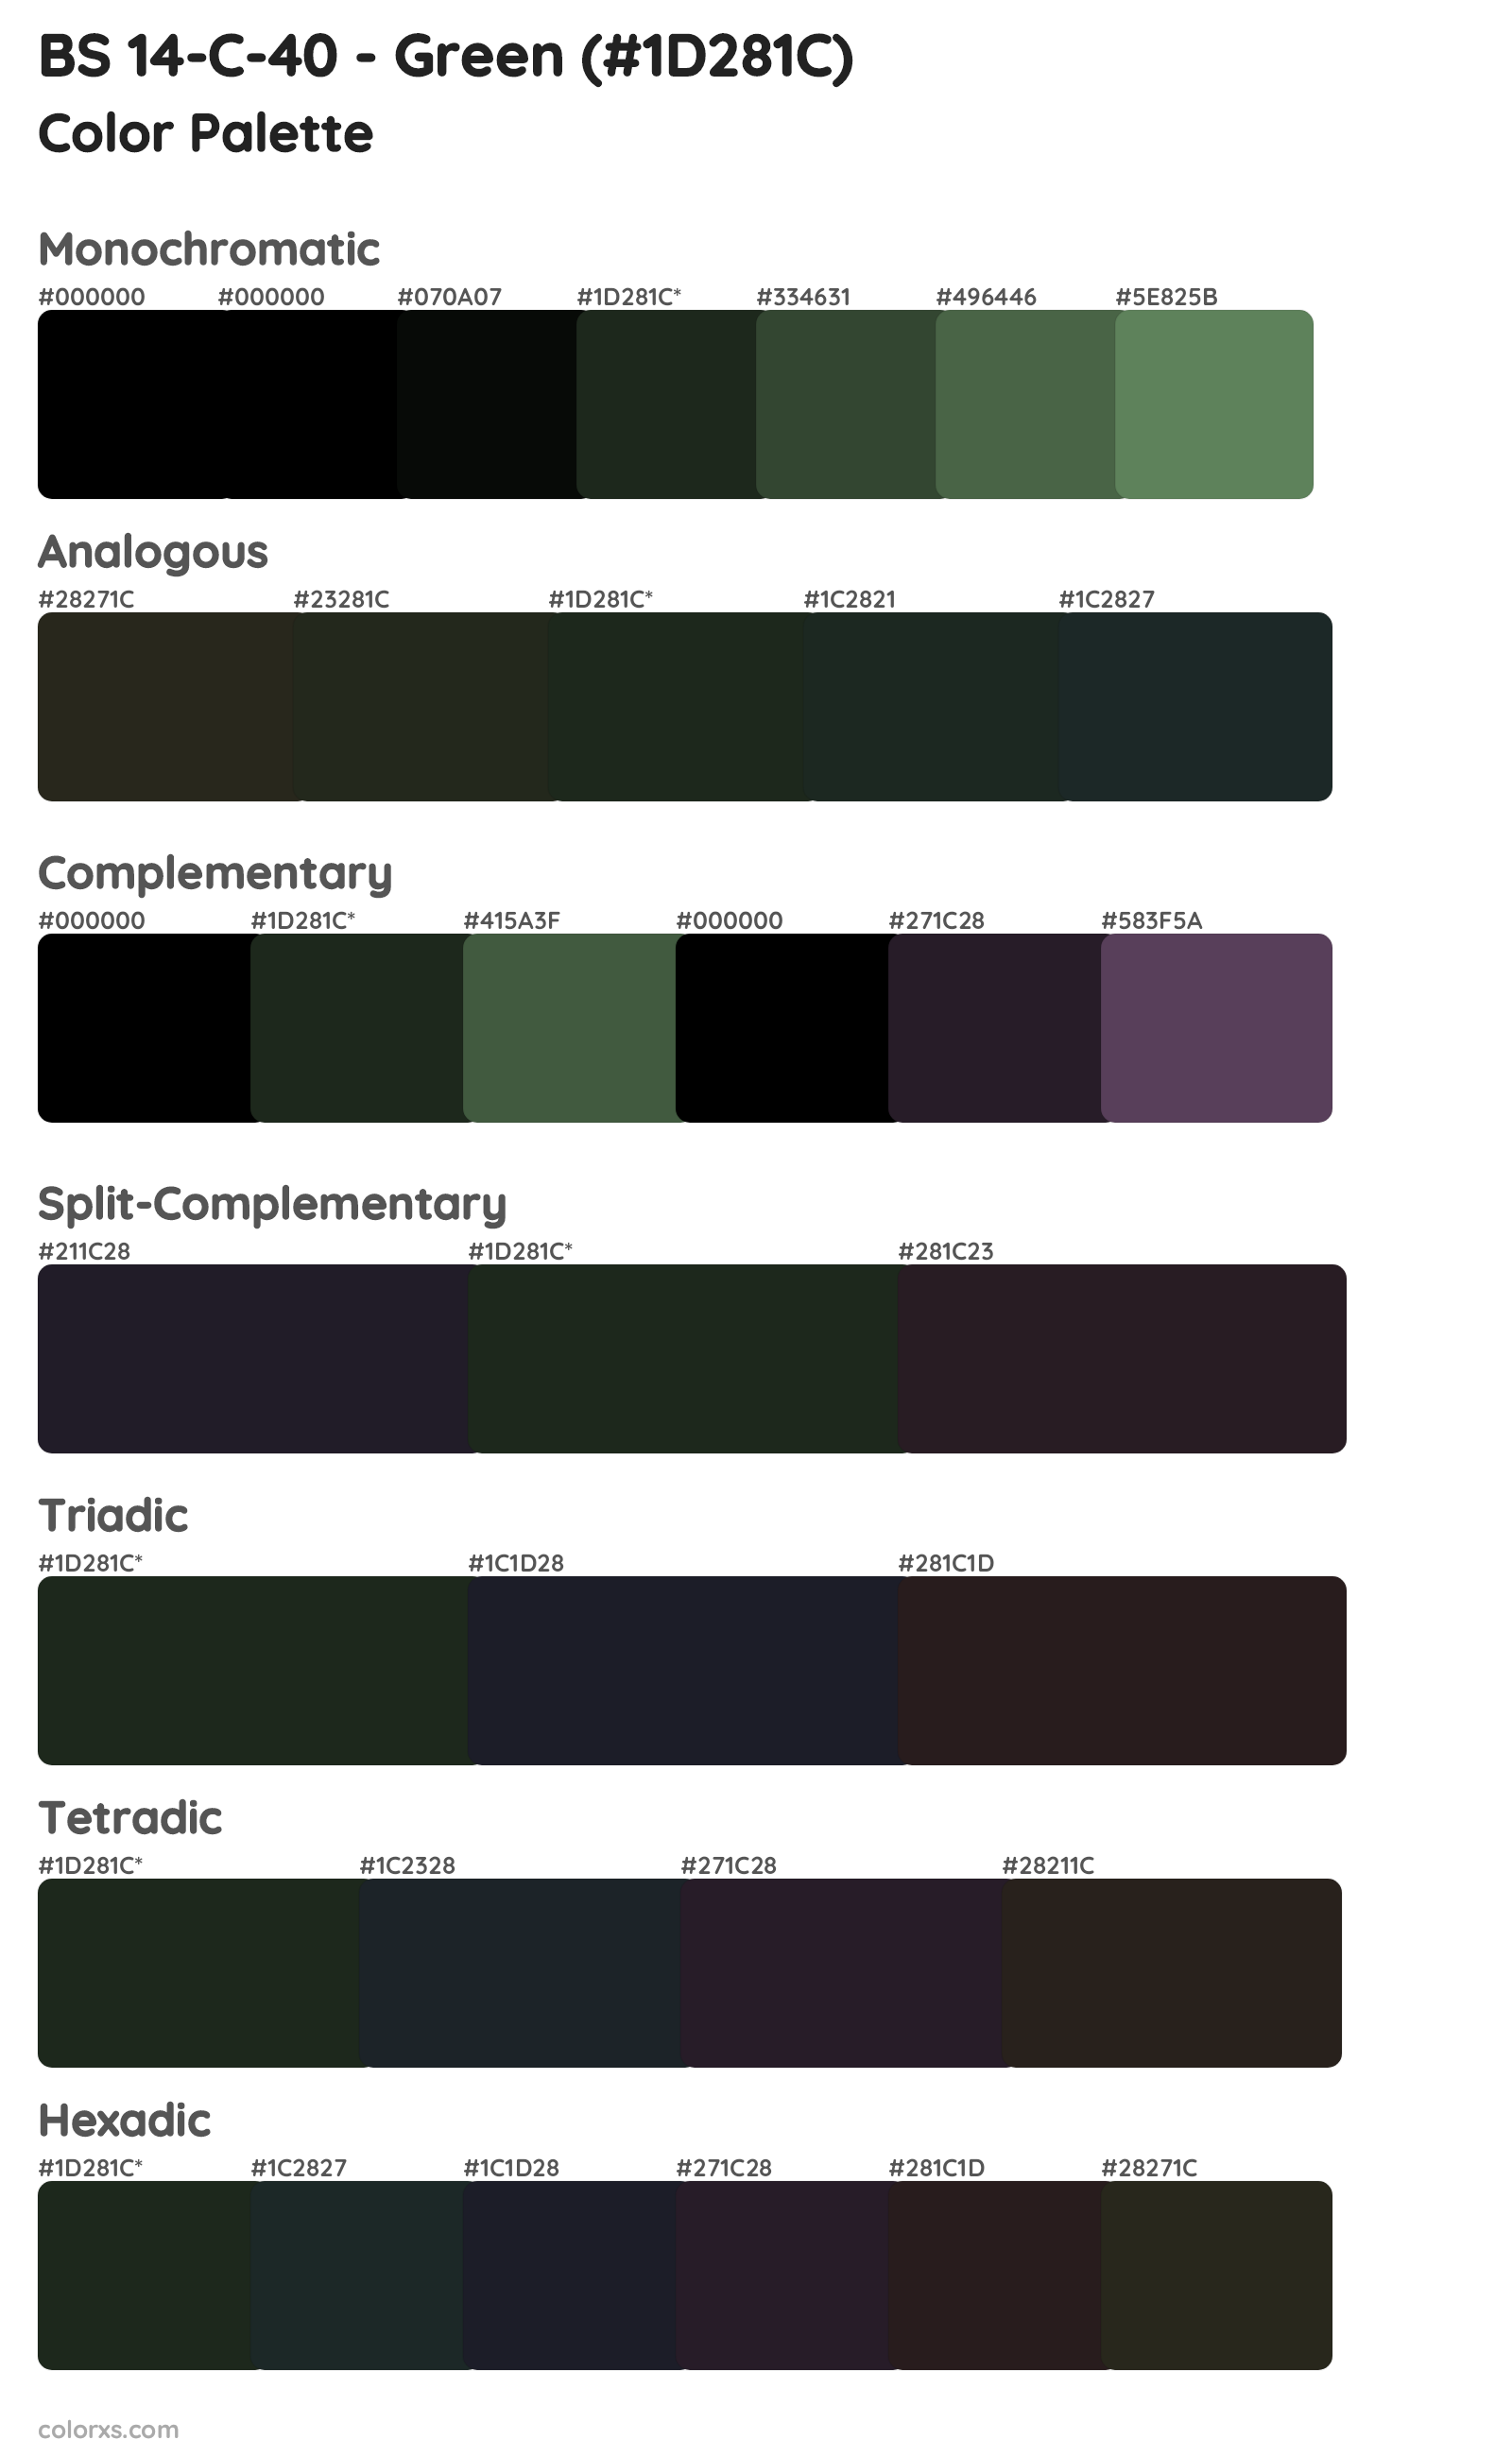 BS 14-C-40 - Green Color Scheme Palettes